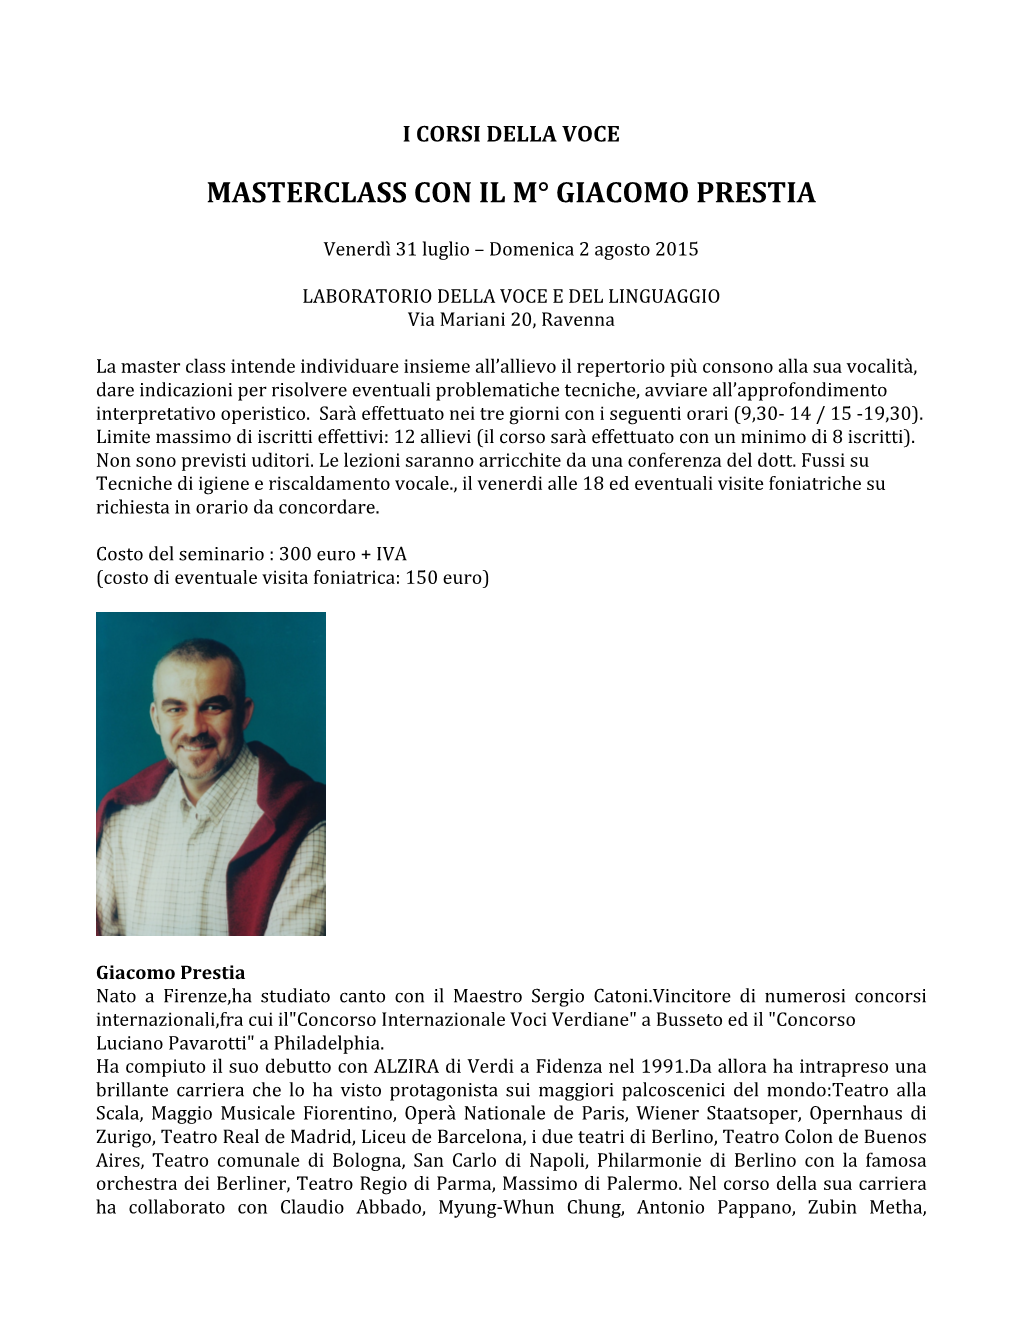 Masterclass Con Il M° Giacomo Prestia